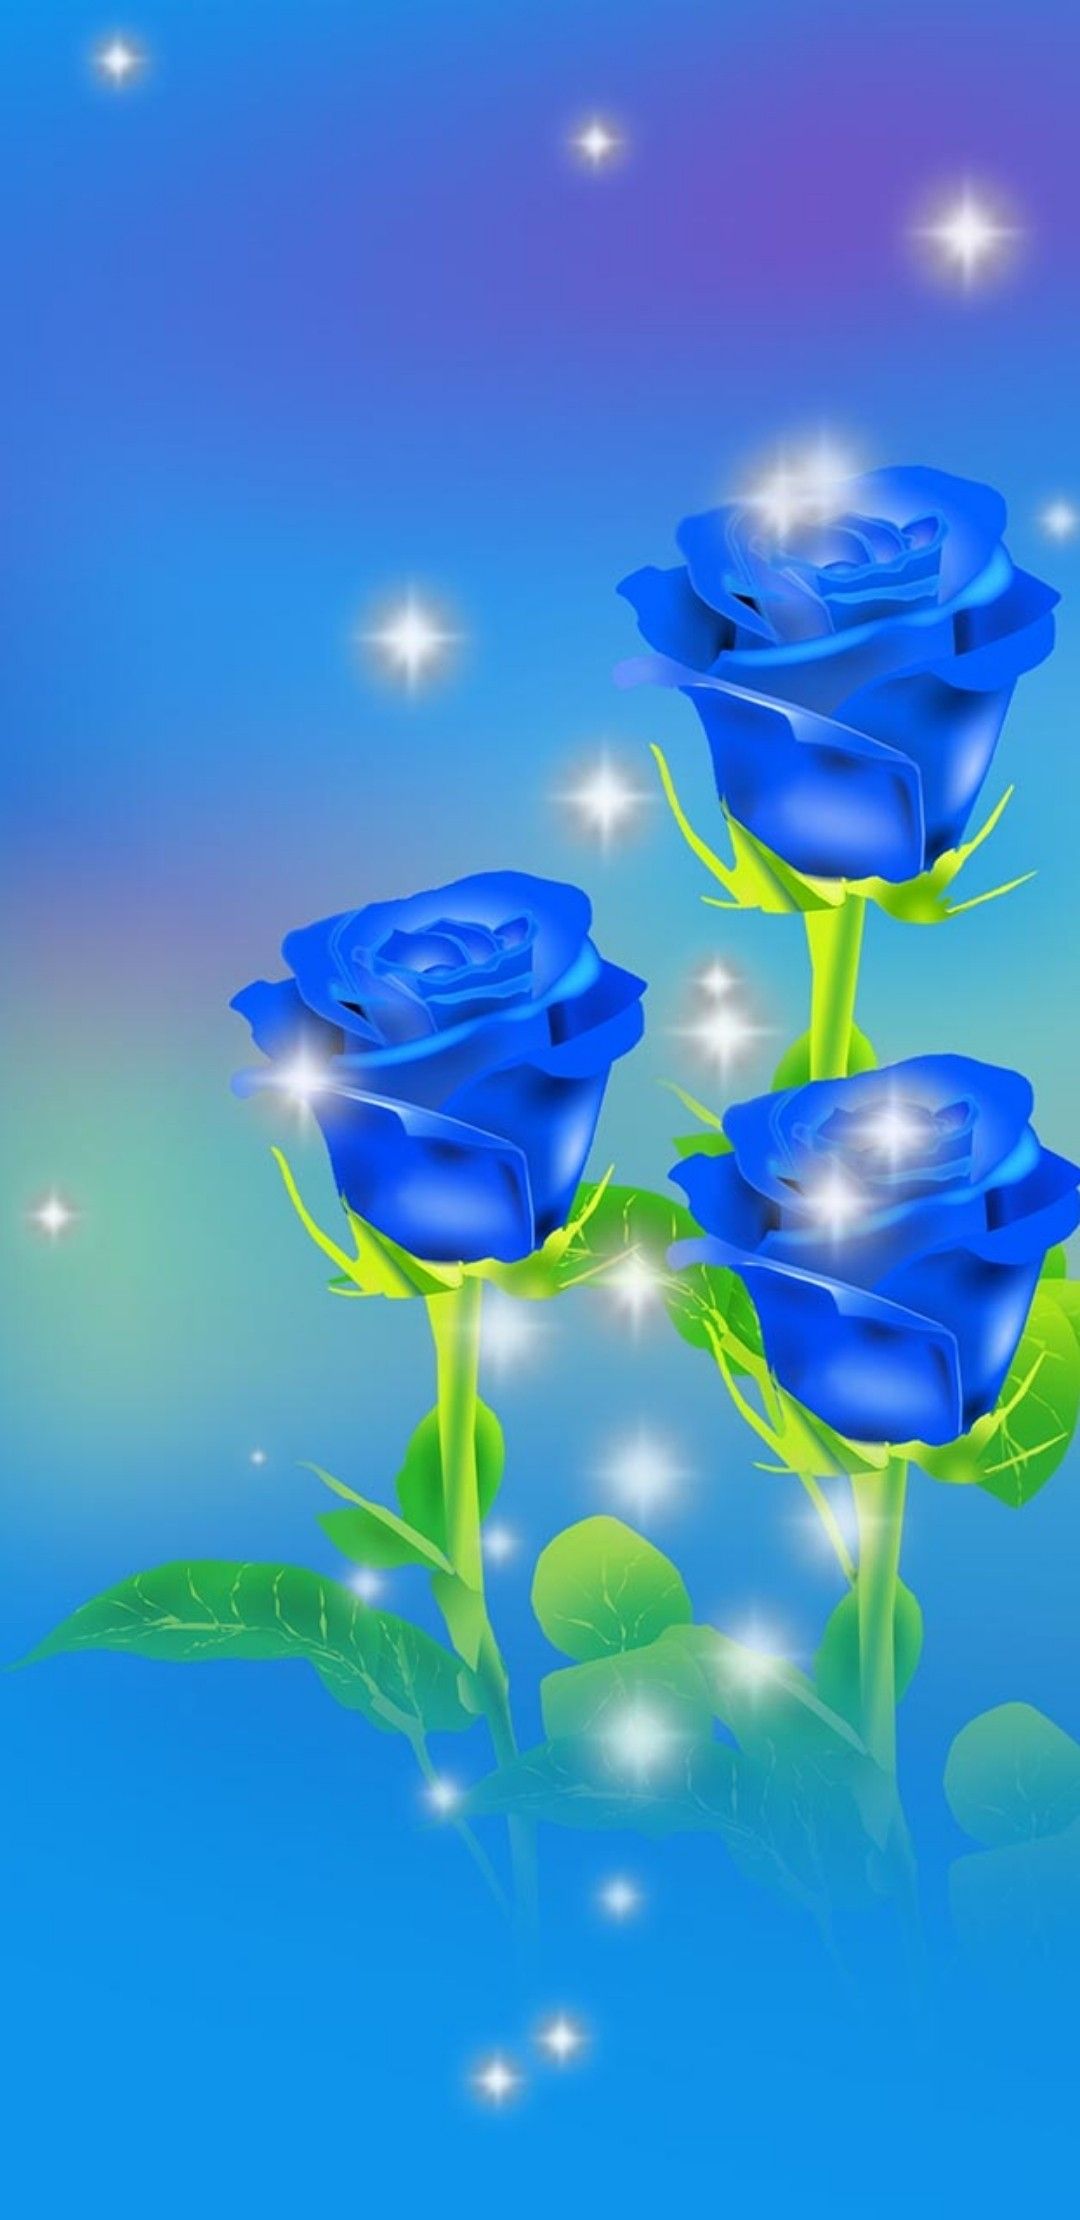 belles images de roses pour fond d'écran,bleu,rose bleue,l'eau,fleur,rose